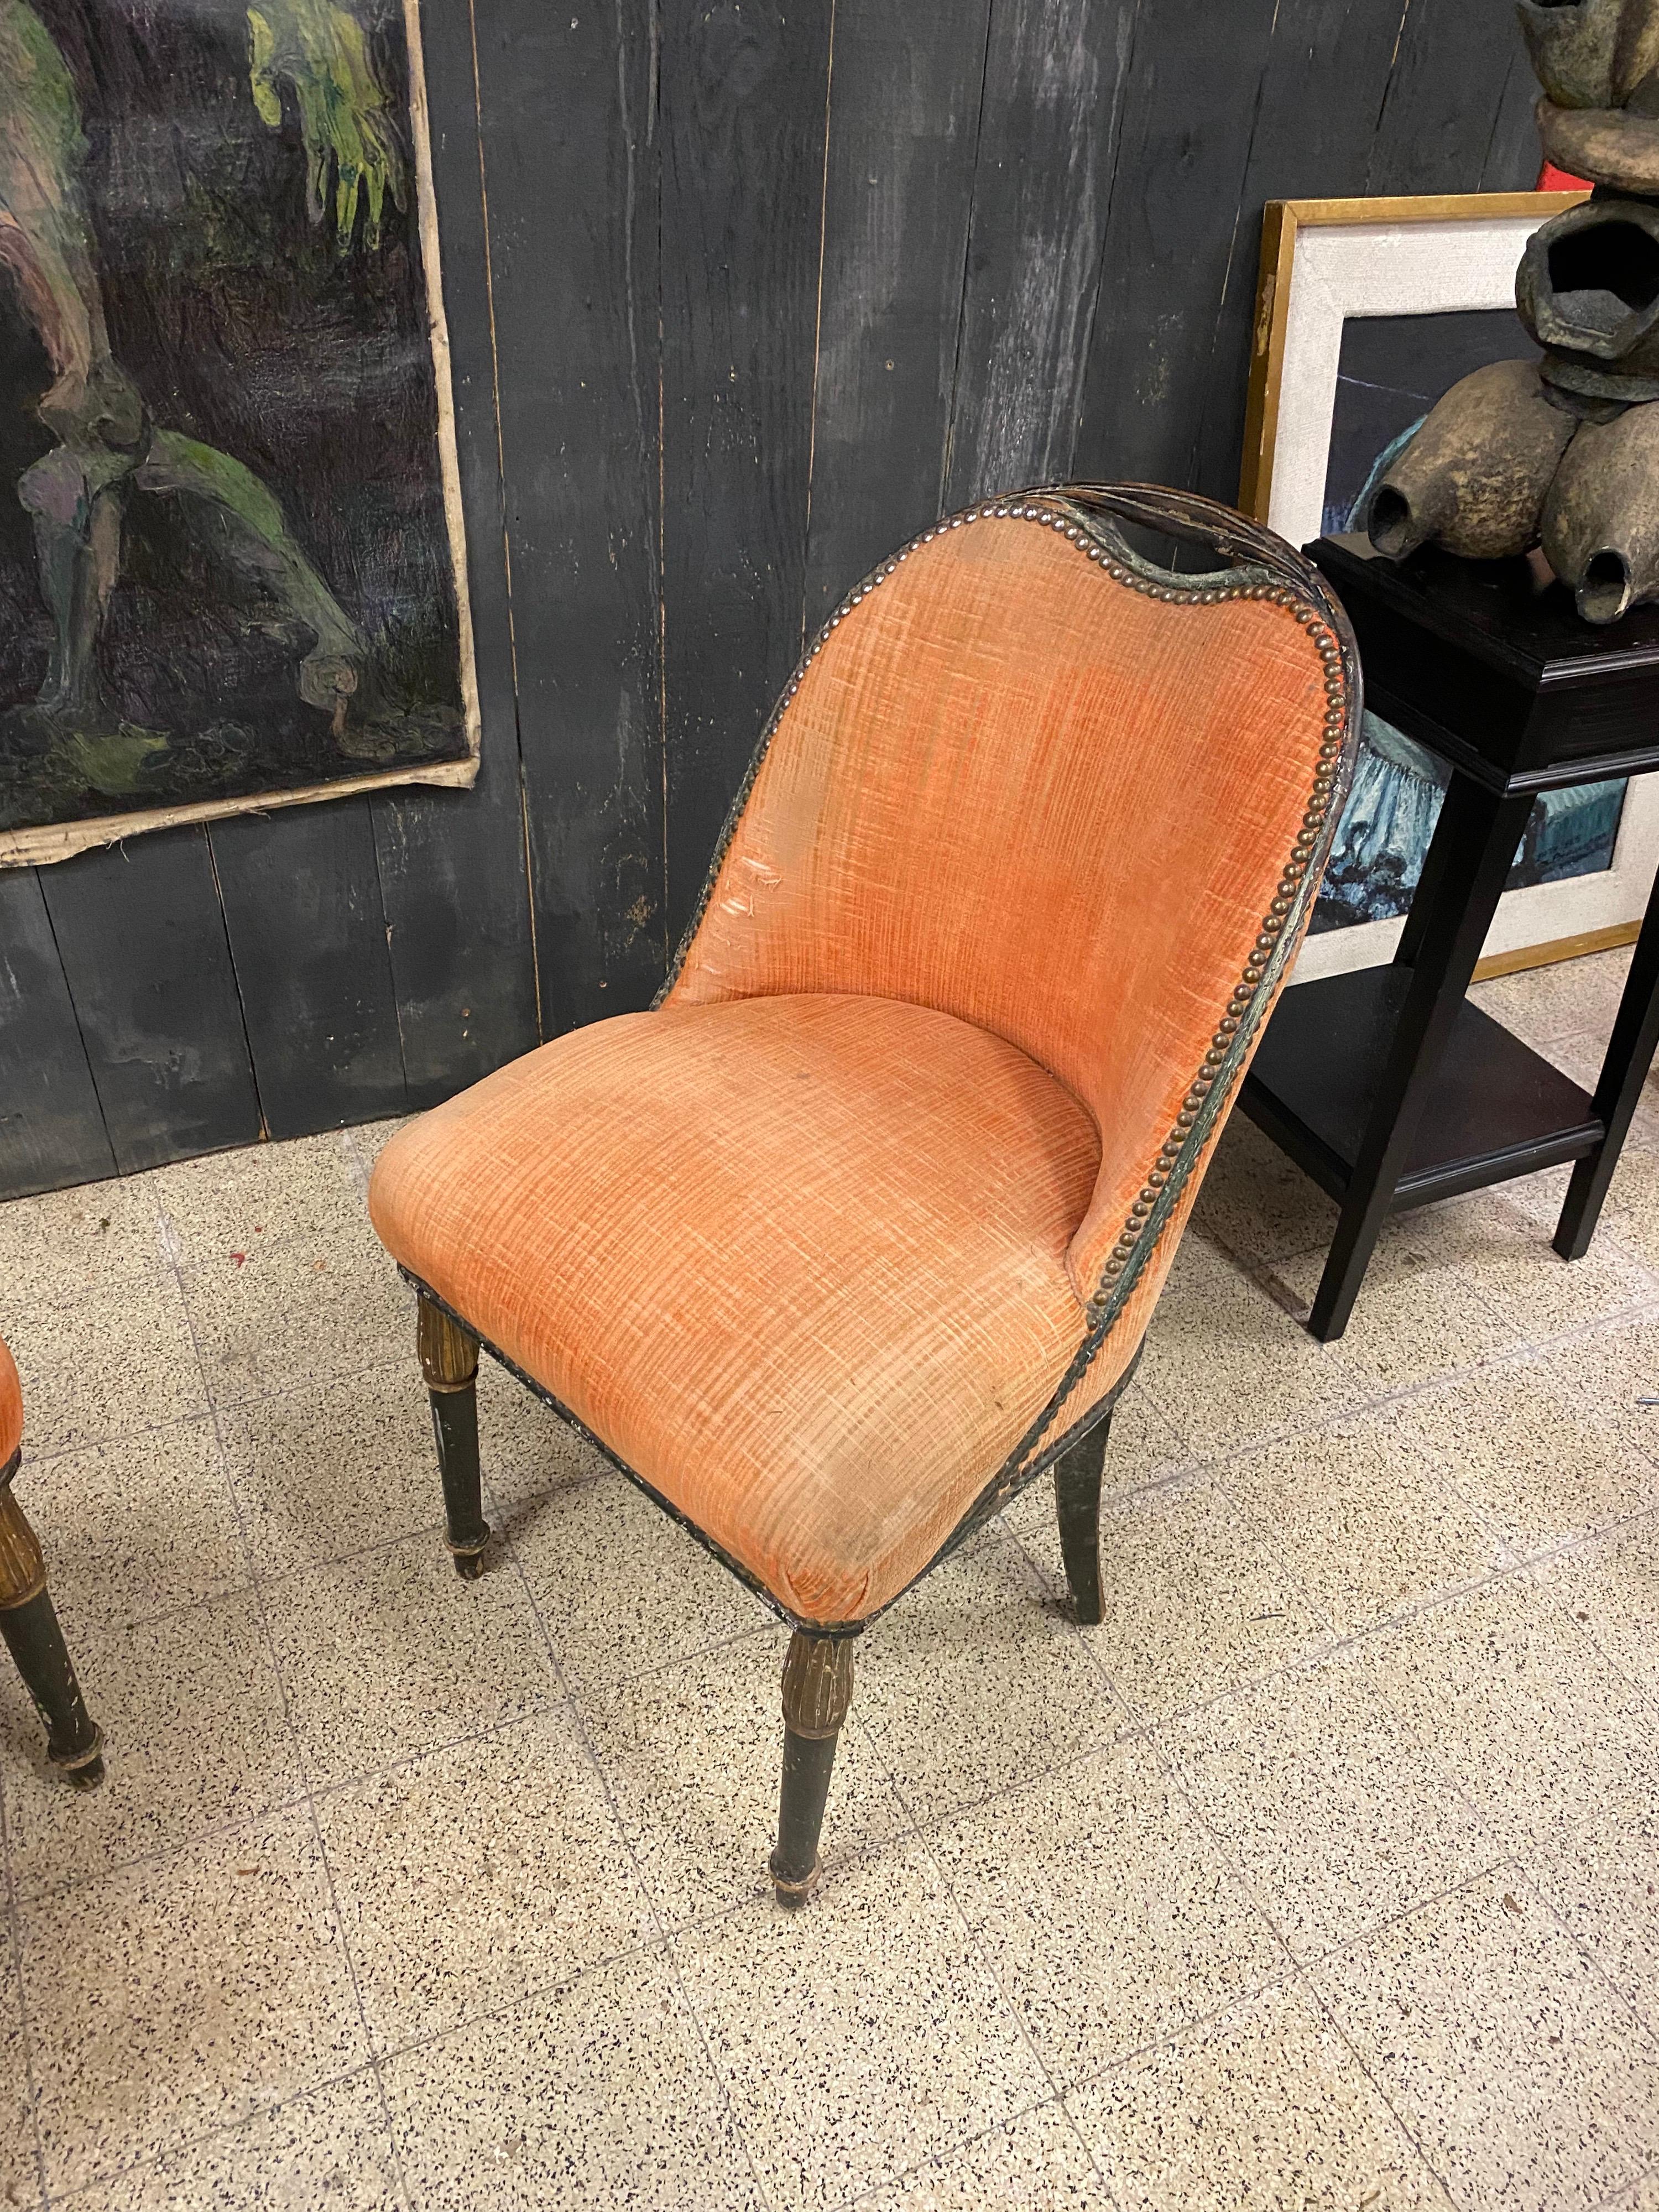 Deux chaises Art Déco dans le style de SUE et Mare en bois polychrome, vers 1925
A restaurer.